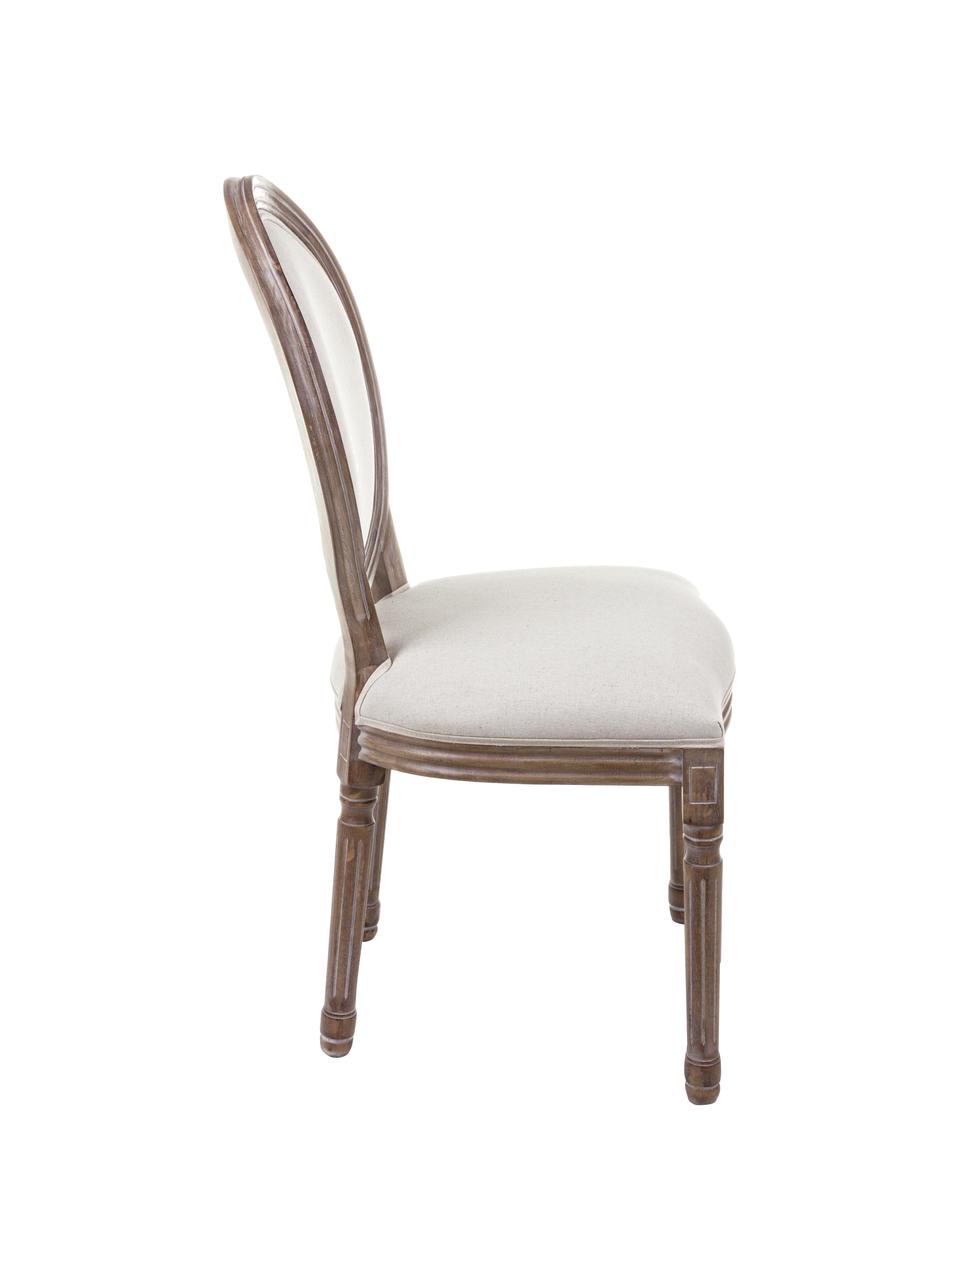 Krzesło tapicerowane Mathilde, 2 szt., Tapicerka: 64% bawełna, 36% len, Stelaż: drewno brzozowe, lakierow, Tapicerka: pianka, Jasny beżowy, drewno brzozowe, S 48 x G 46 cm